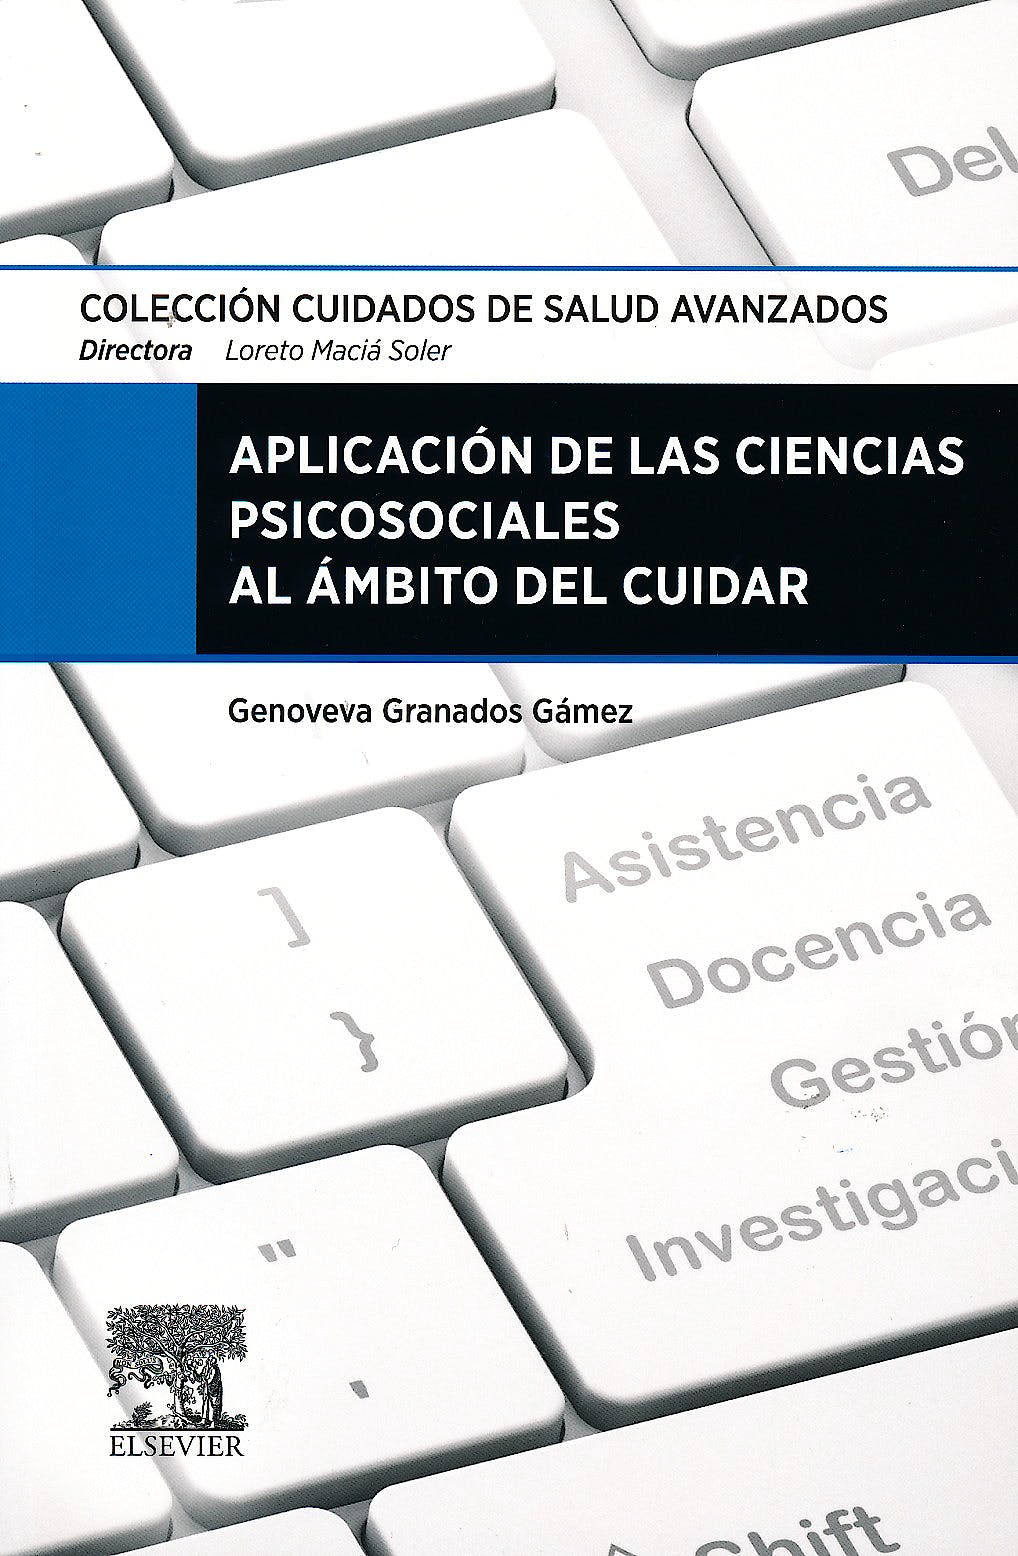 GRANADOS, G., APLICACIÓN DE LAS CIENCIAS PSICOSOCIALES AL ÁMBITO DEL CUIDAR © 2014